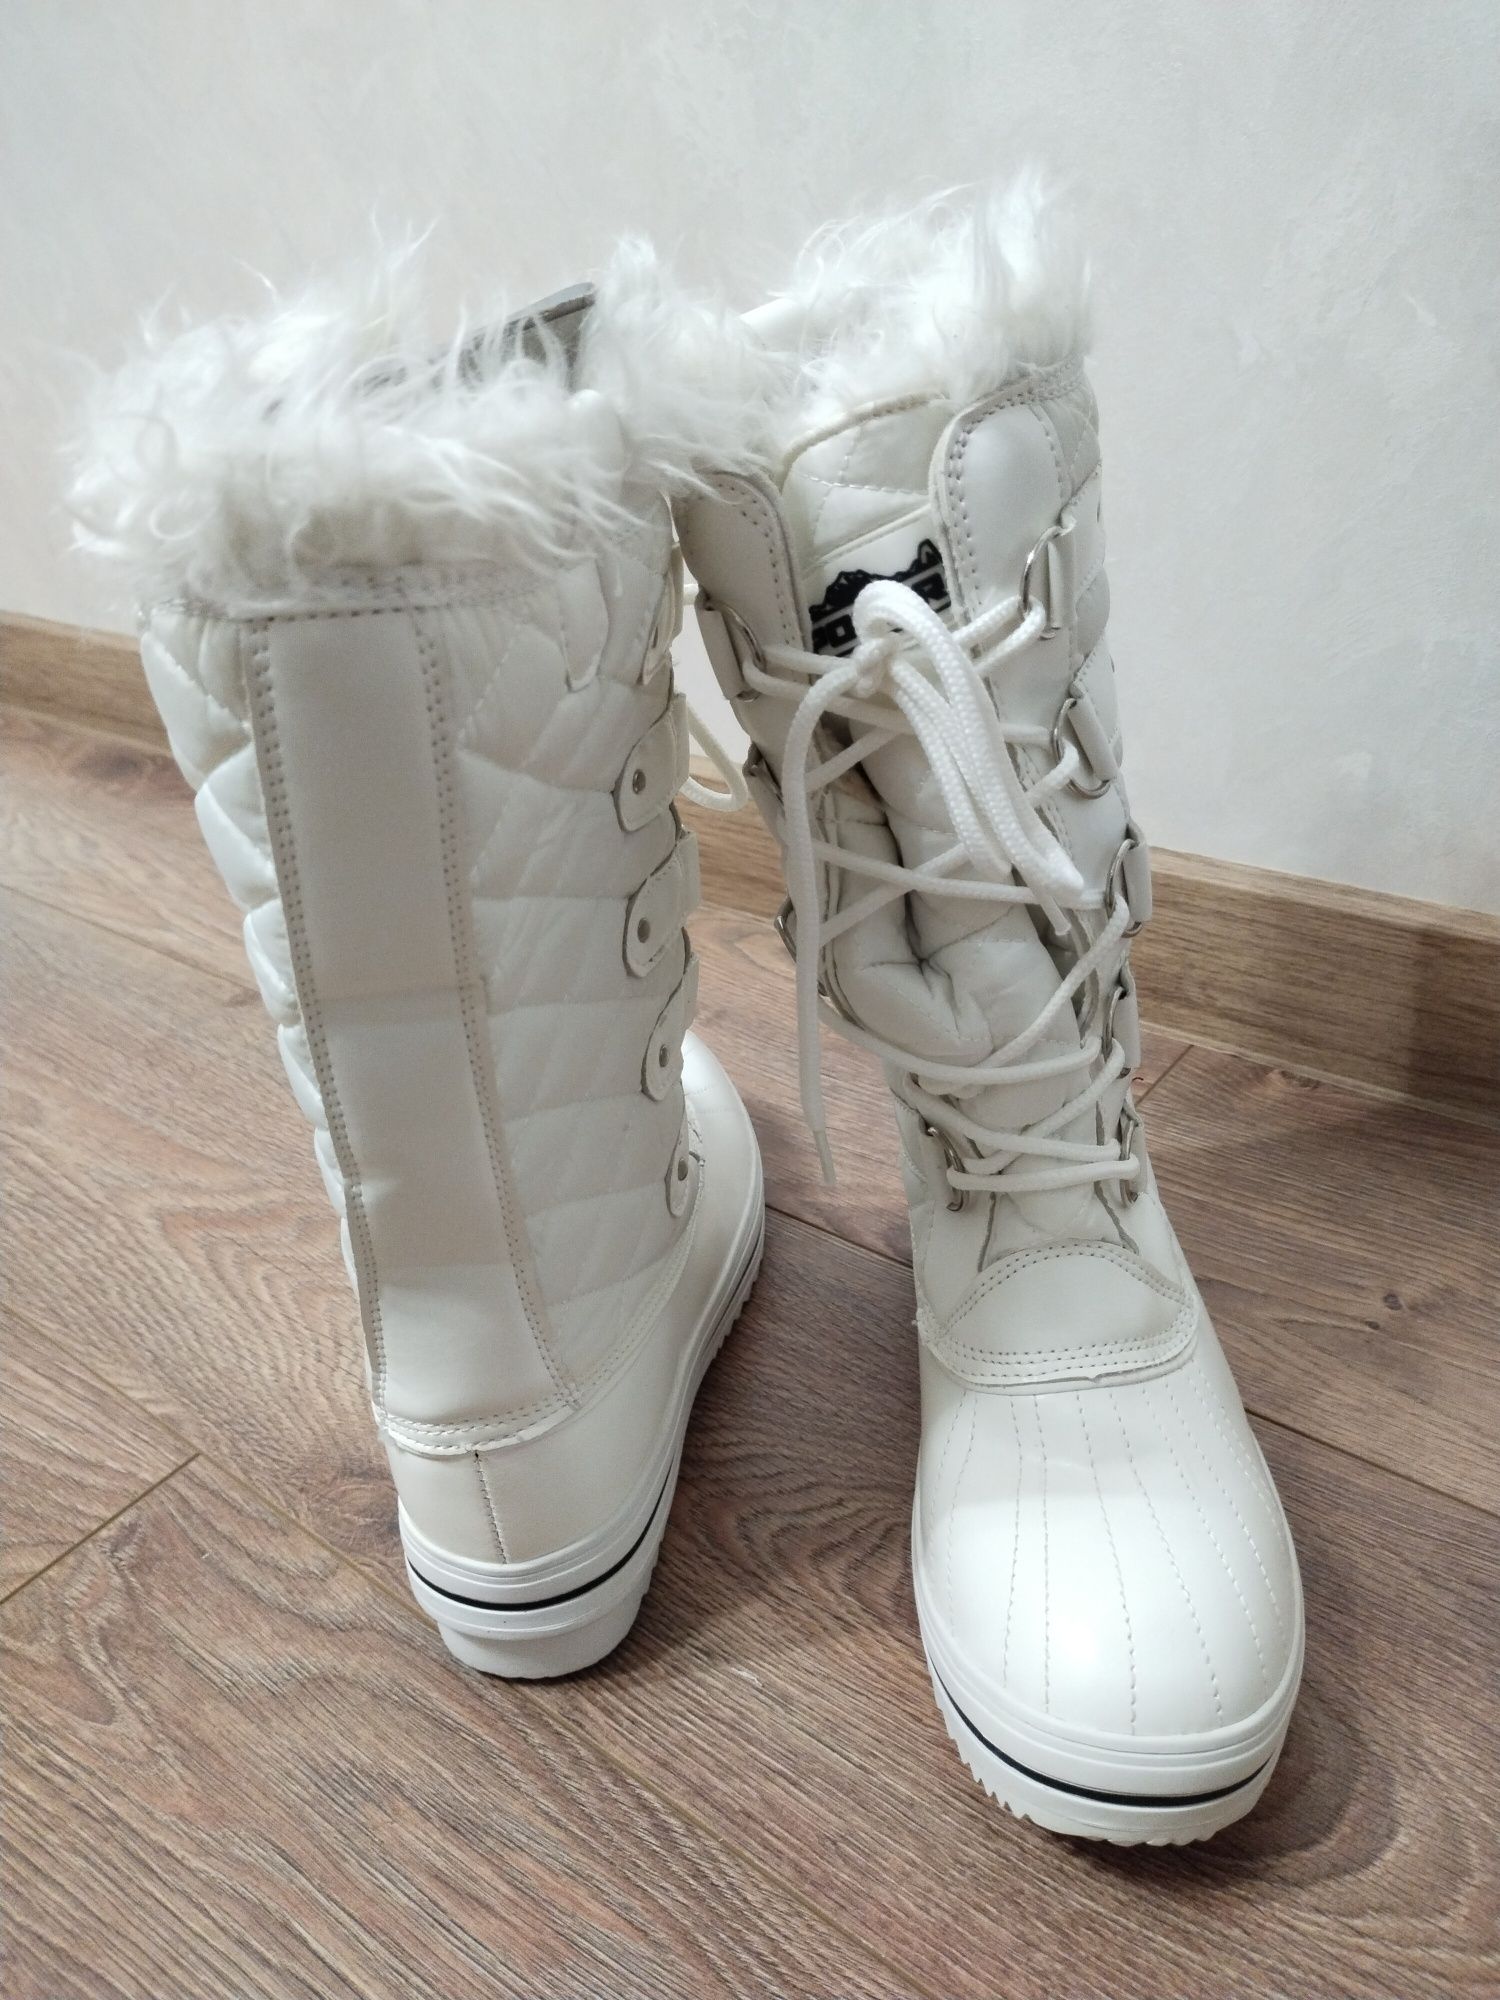 Продам теплі демисезоні чоботи  Polar  на сьогоднішню  погоду.